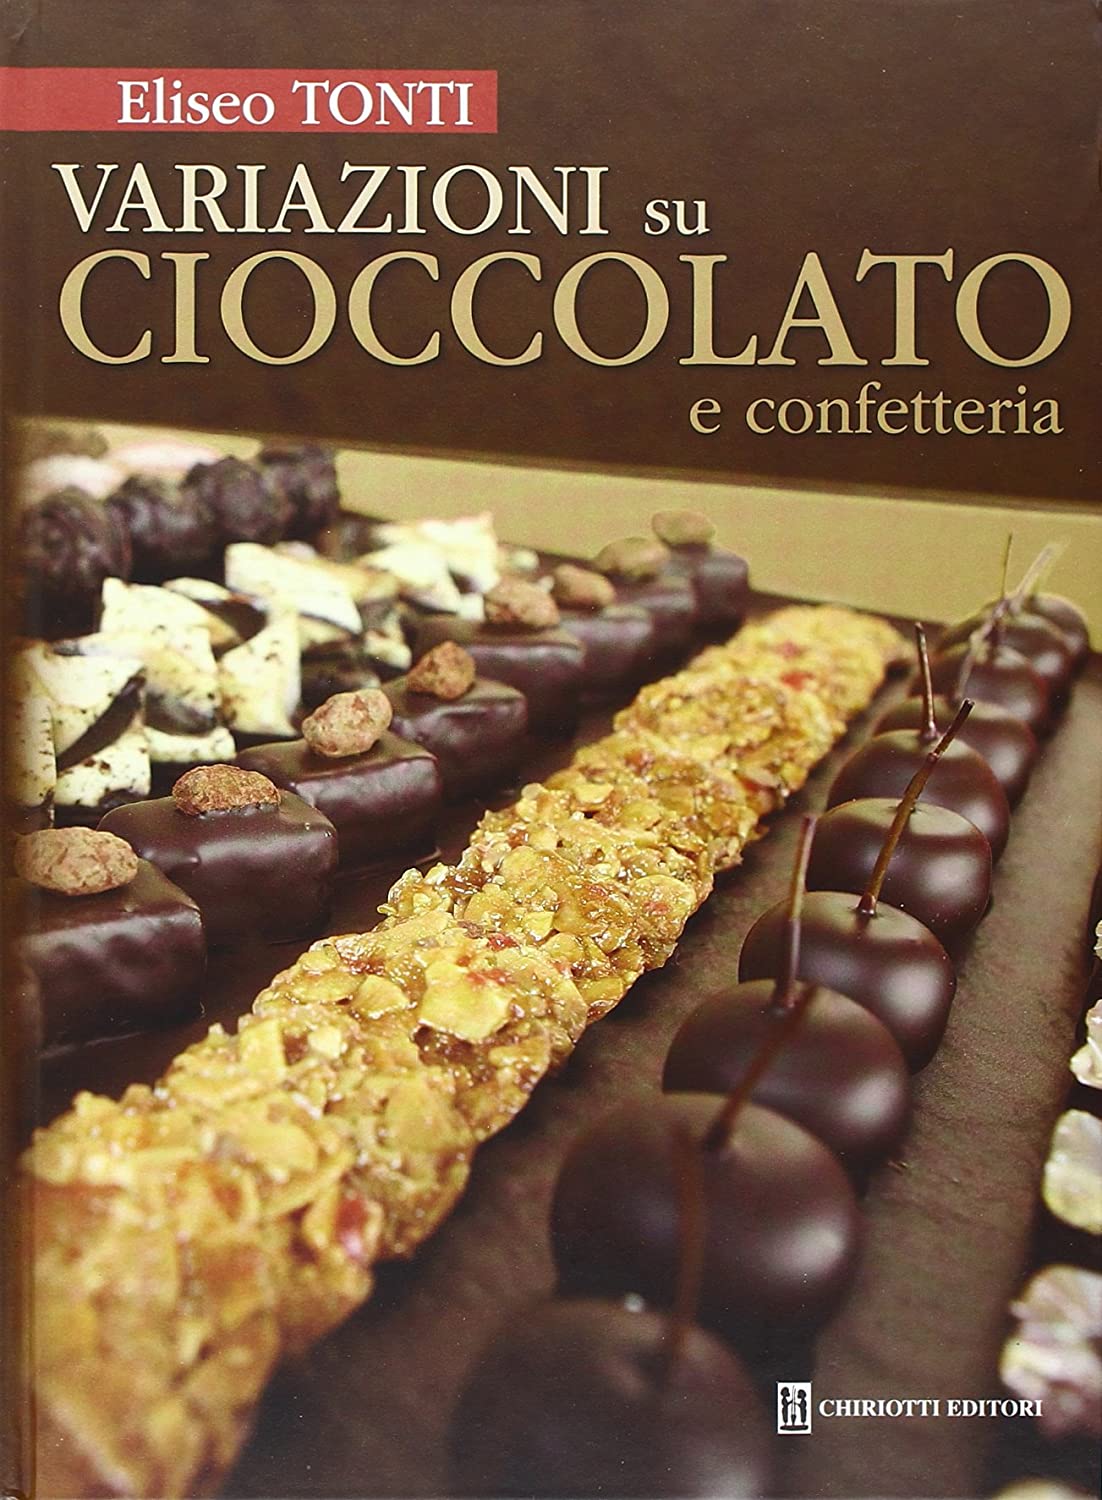 Libri Eliseo Tonti - Variazioni Su Cioccolato E Confetteria NUOVO SIGILLATO, EDIZIONE DEL 10/12/2012 SUBITO DISPONIBILE